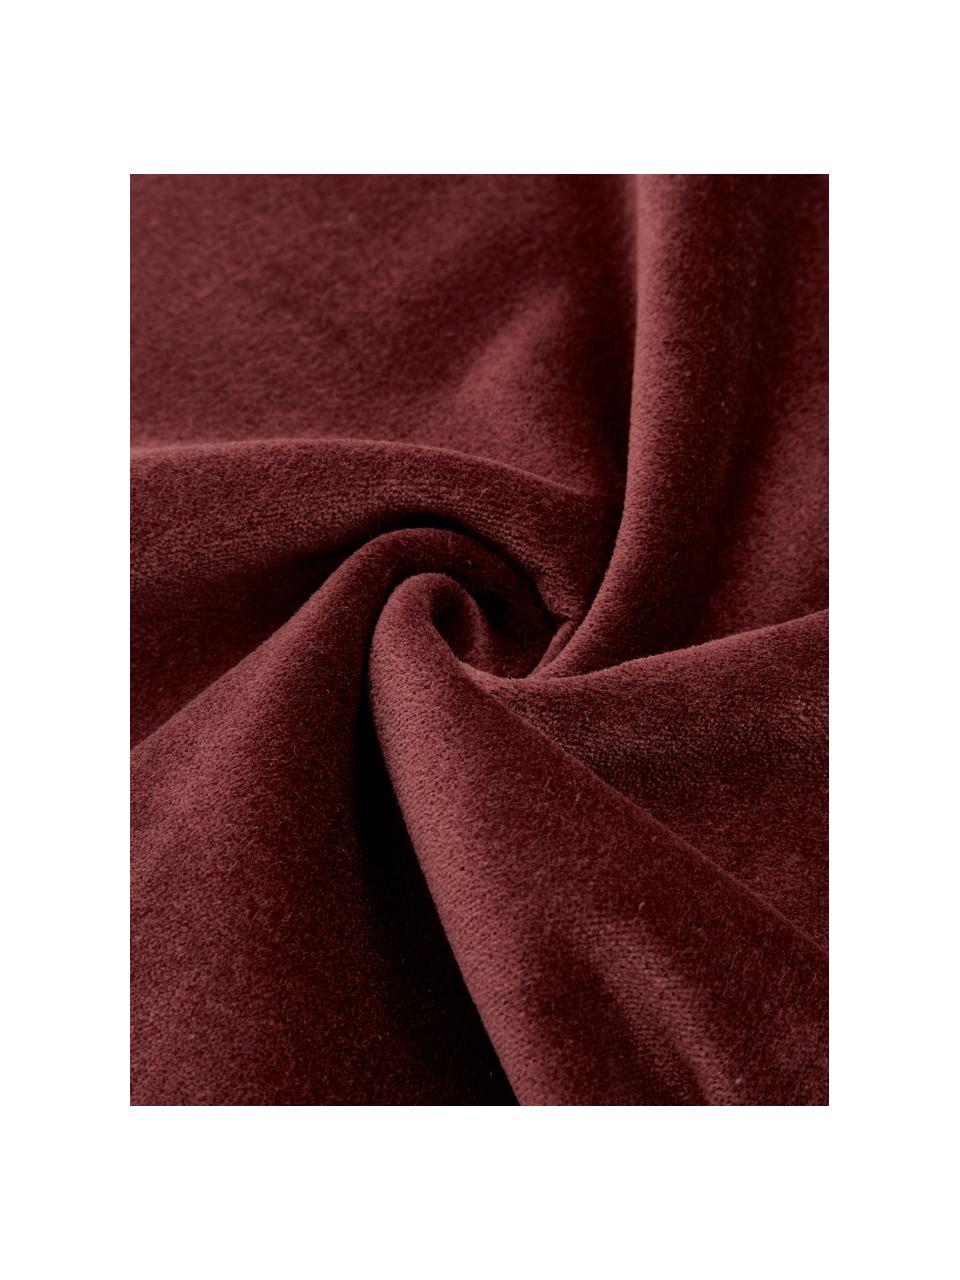 Cojín de terciopelo Pintuck, con relleno, Funda: 55% rayón, 45% algodón, Rojo burdeos, An 45 x L 45 cm